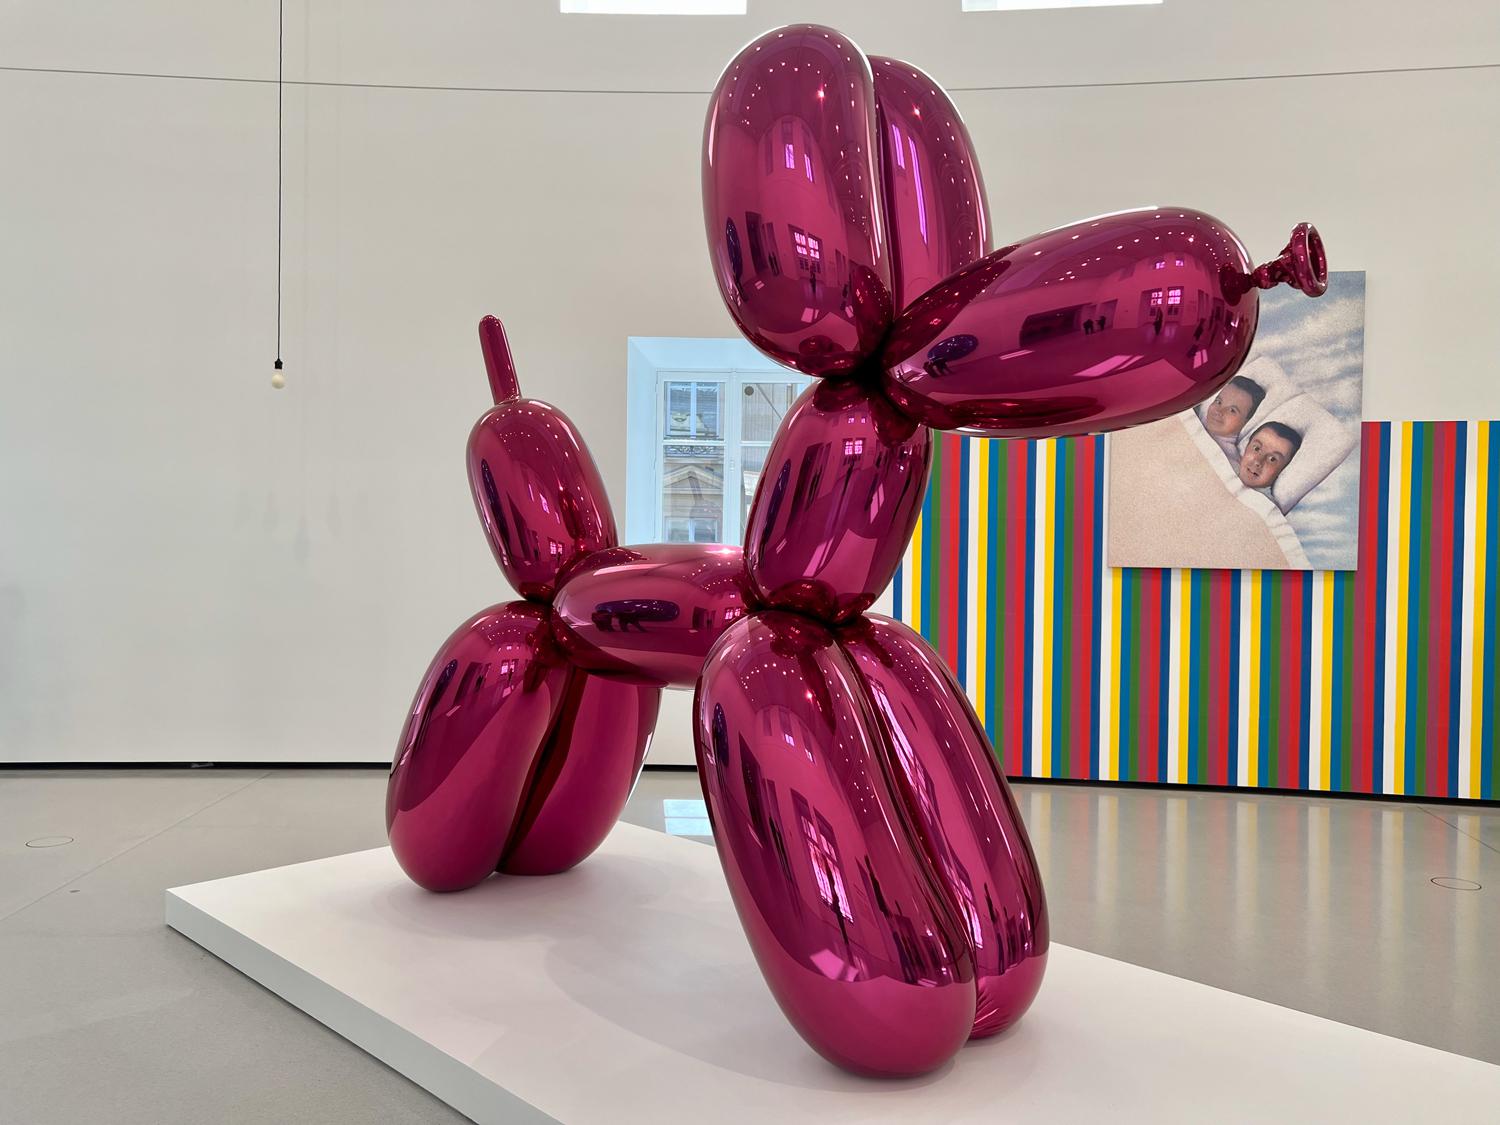 Jeff Koons, Balloon Dog, 1994&ndash;2000